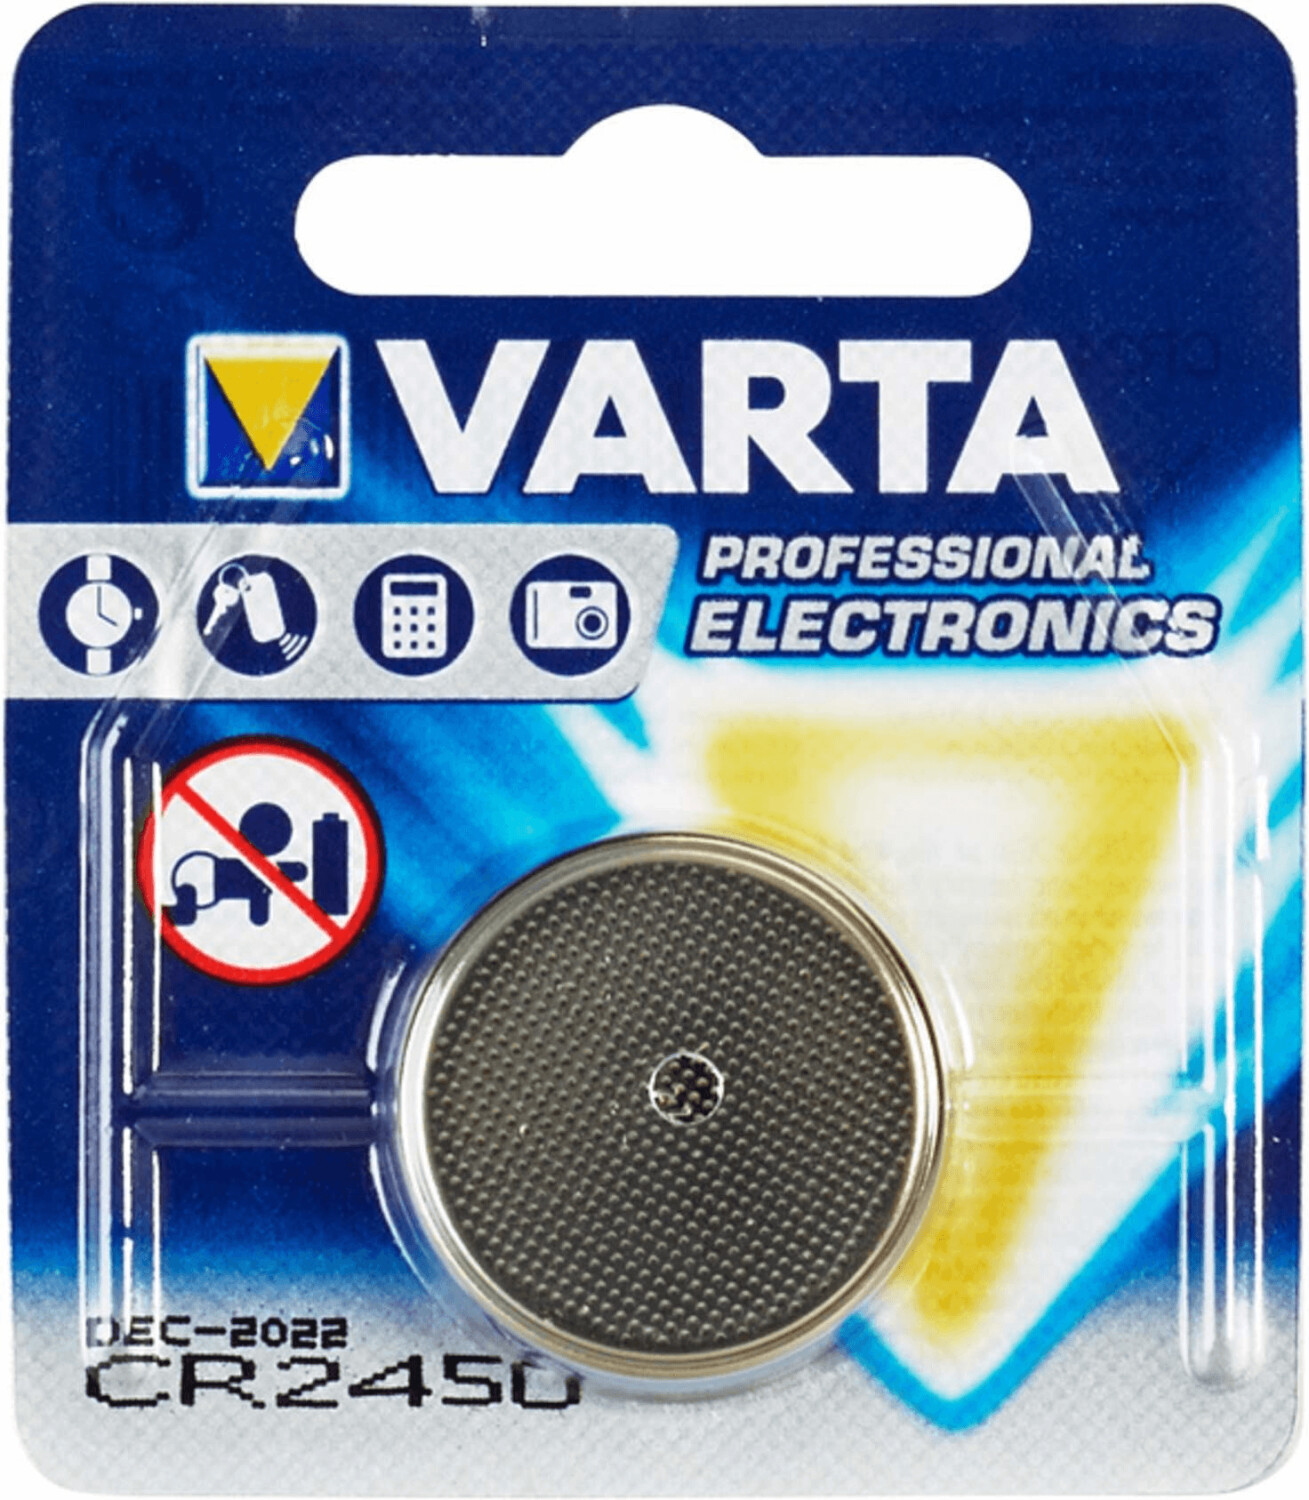 Varta CR2450 Lithium Batterie 3V - 5x 2er Packung 